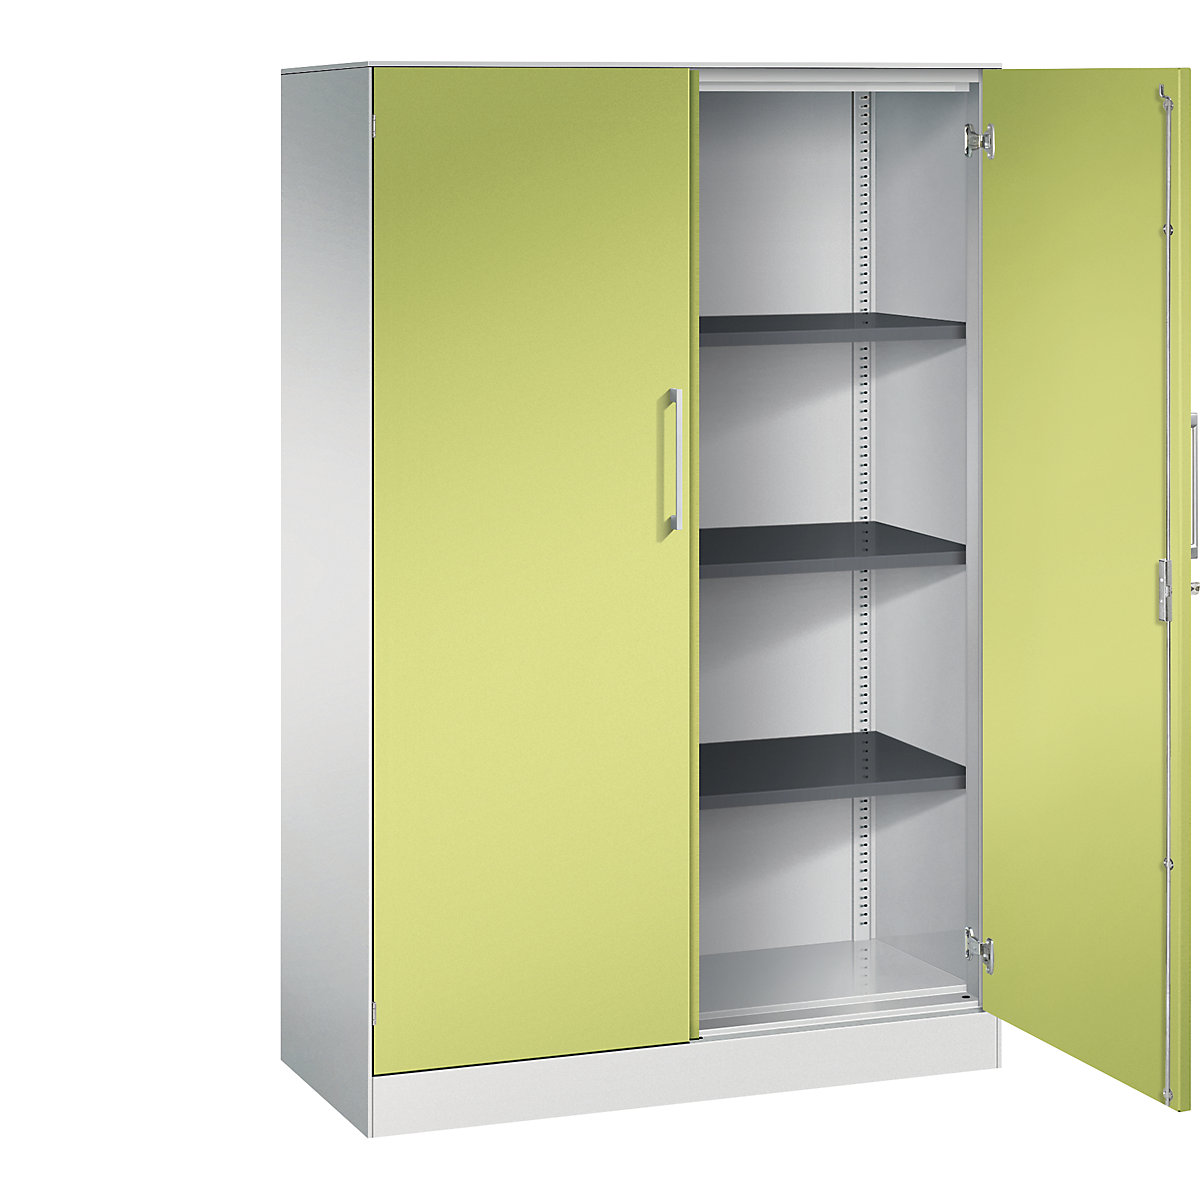 ASISTO double door cupboard, height 1617 mm – C+P, width 1000 mm, 3 shelves, light grey/viridian green-12